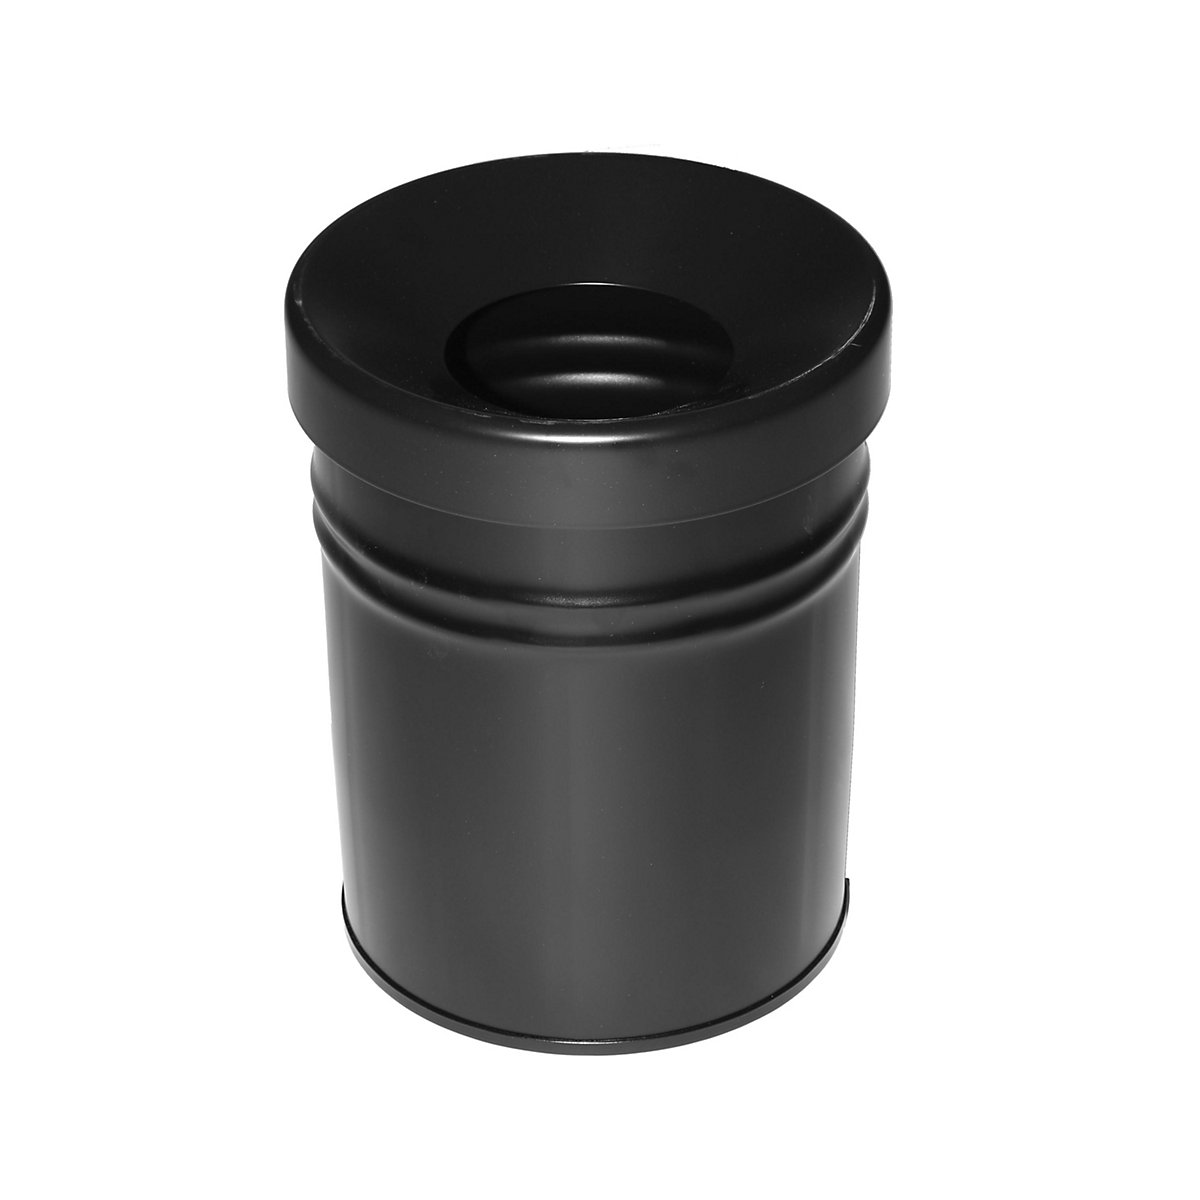 Abfallbehälter, selbstlöschend, Volumen 24 l, HxØ 370 x 295 mm, schwarz-5